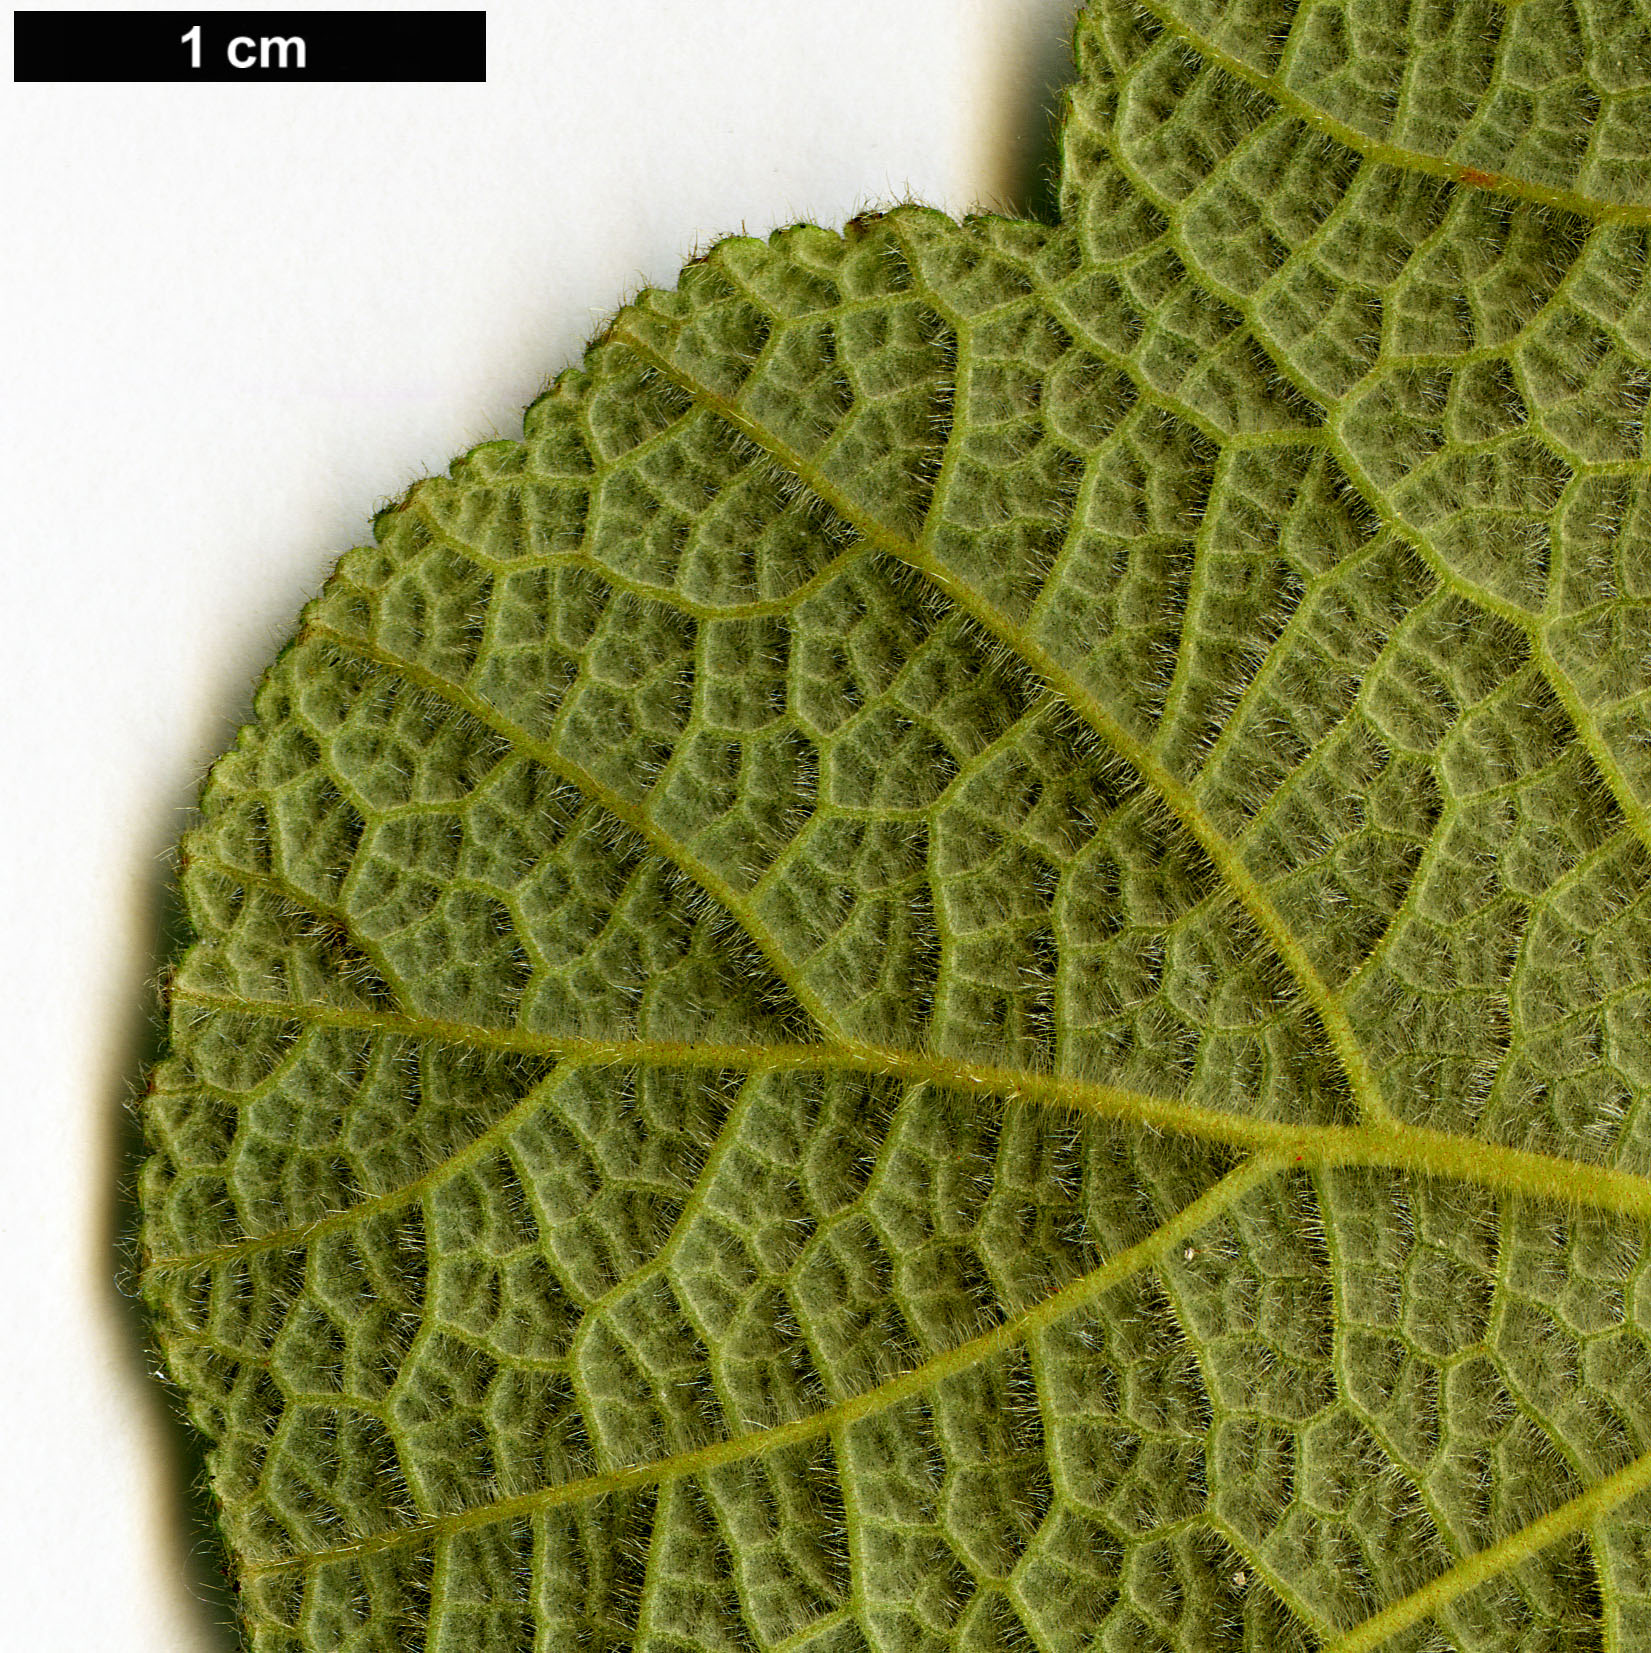 High resolution image: Family: Rosaceae - Genus: Rubus - Taxon: crassifolius